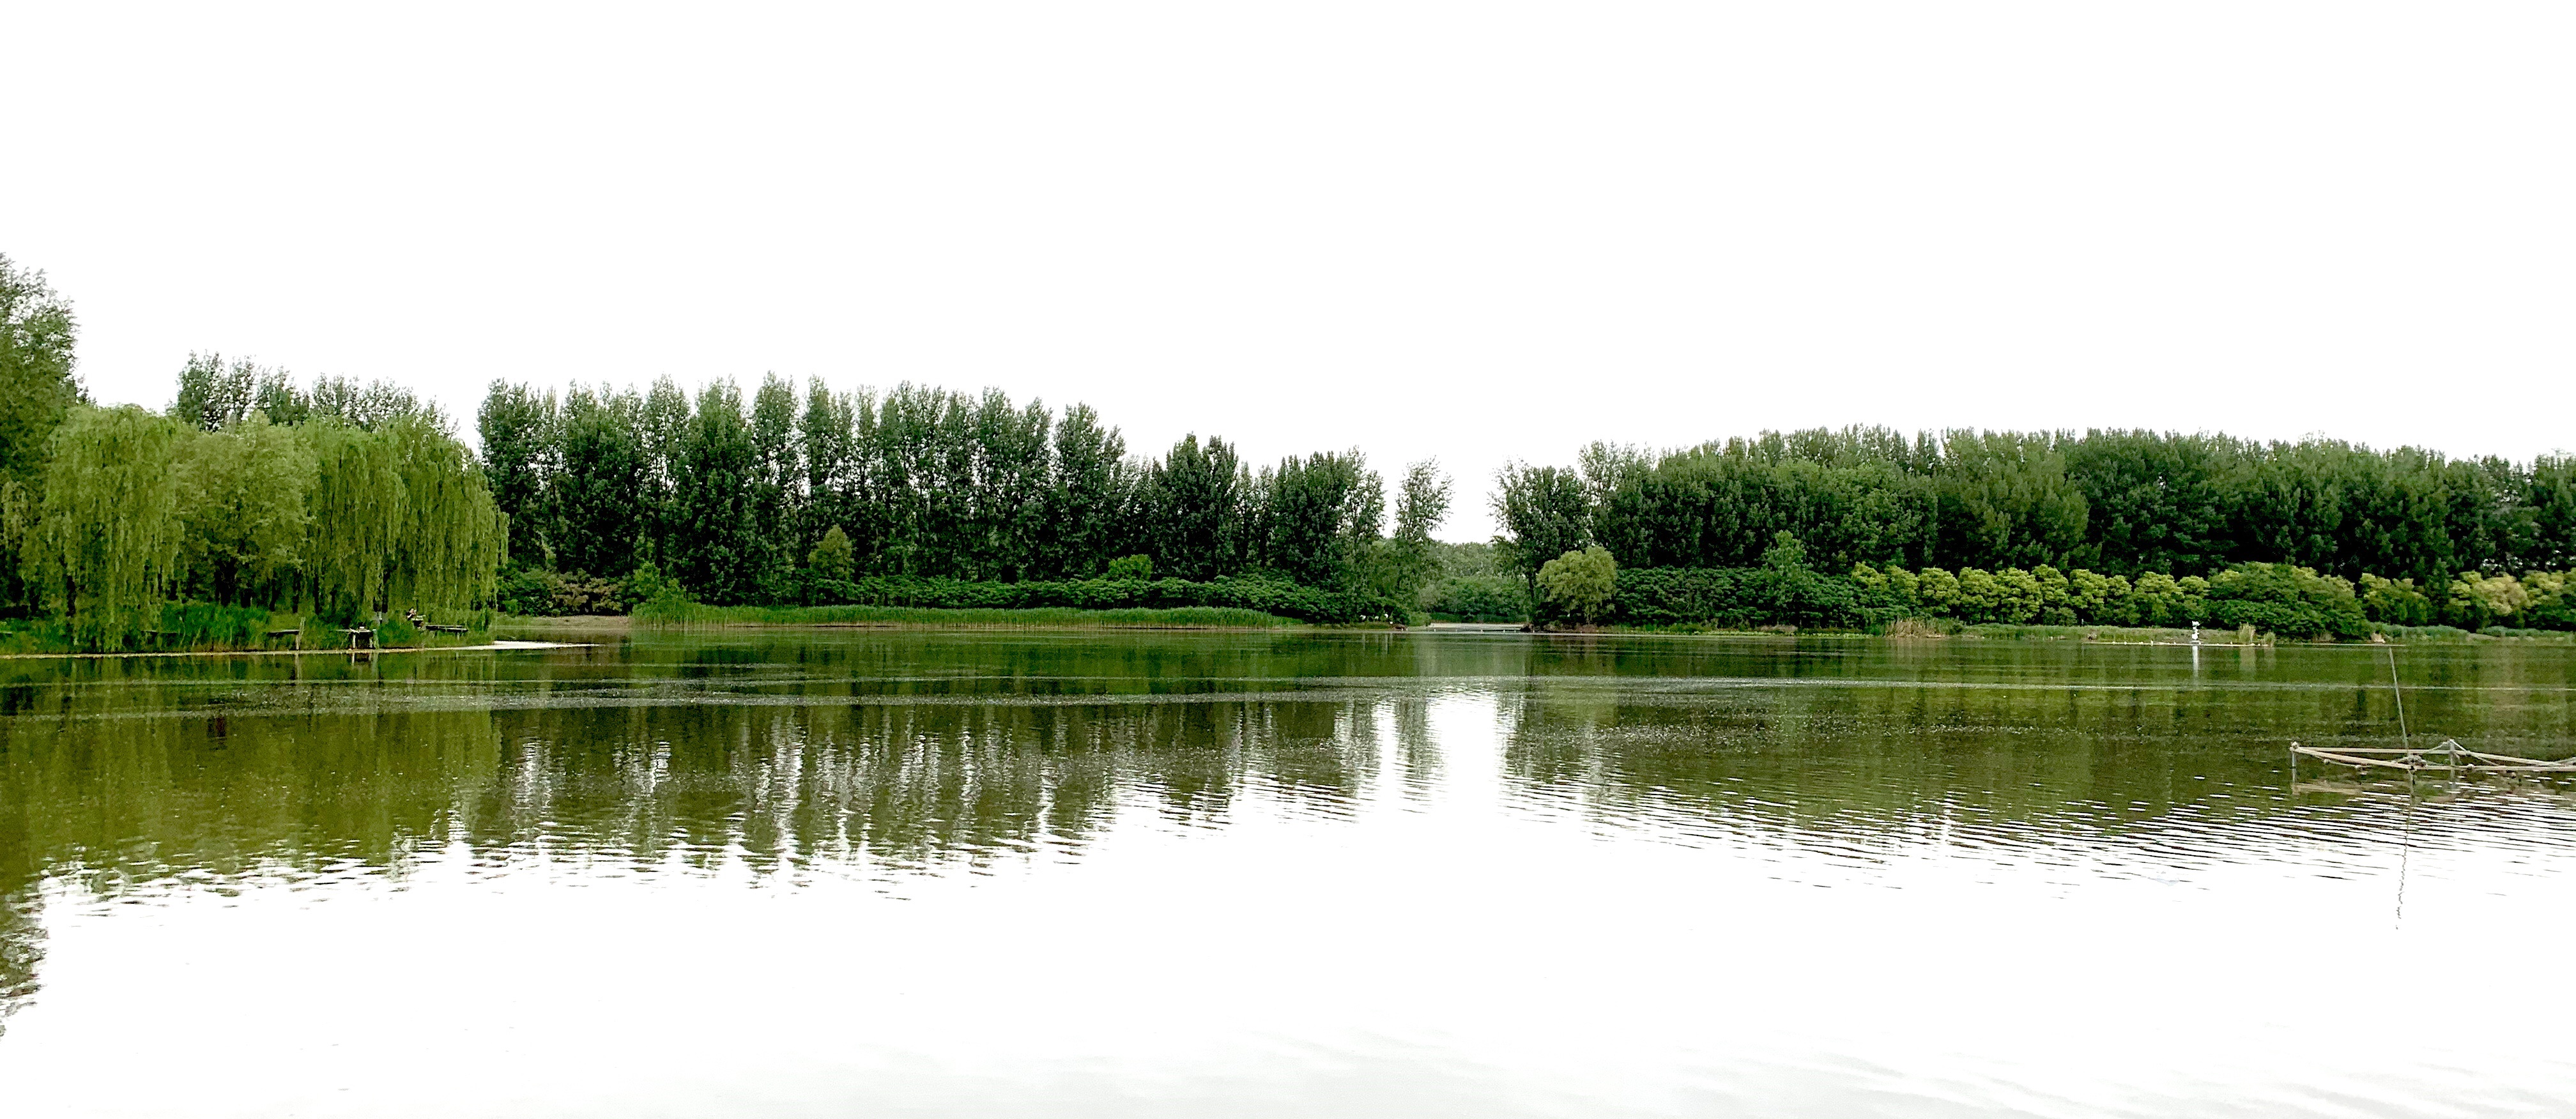 欣赏大自然的美_北京周末自驾汉石桥湿地自然保护区